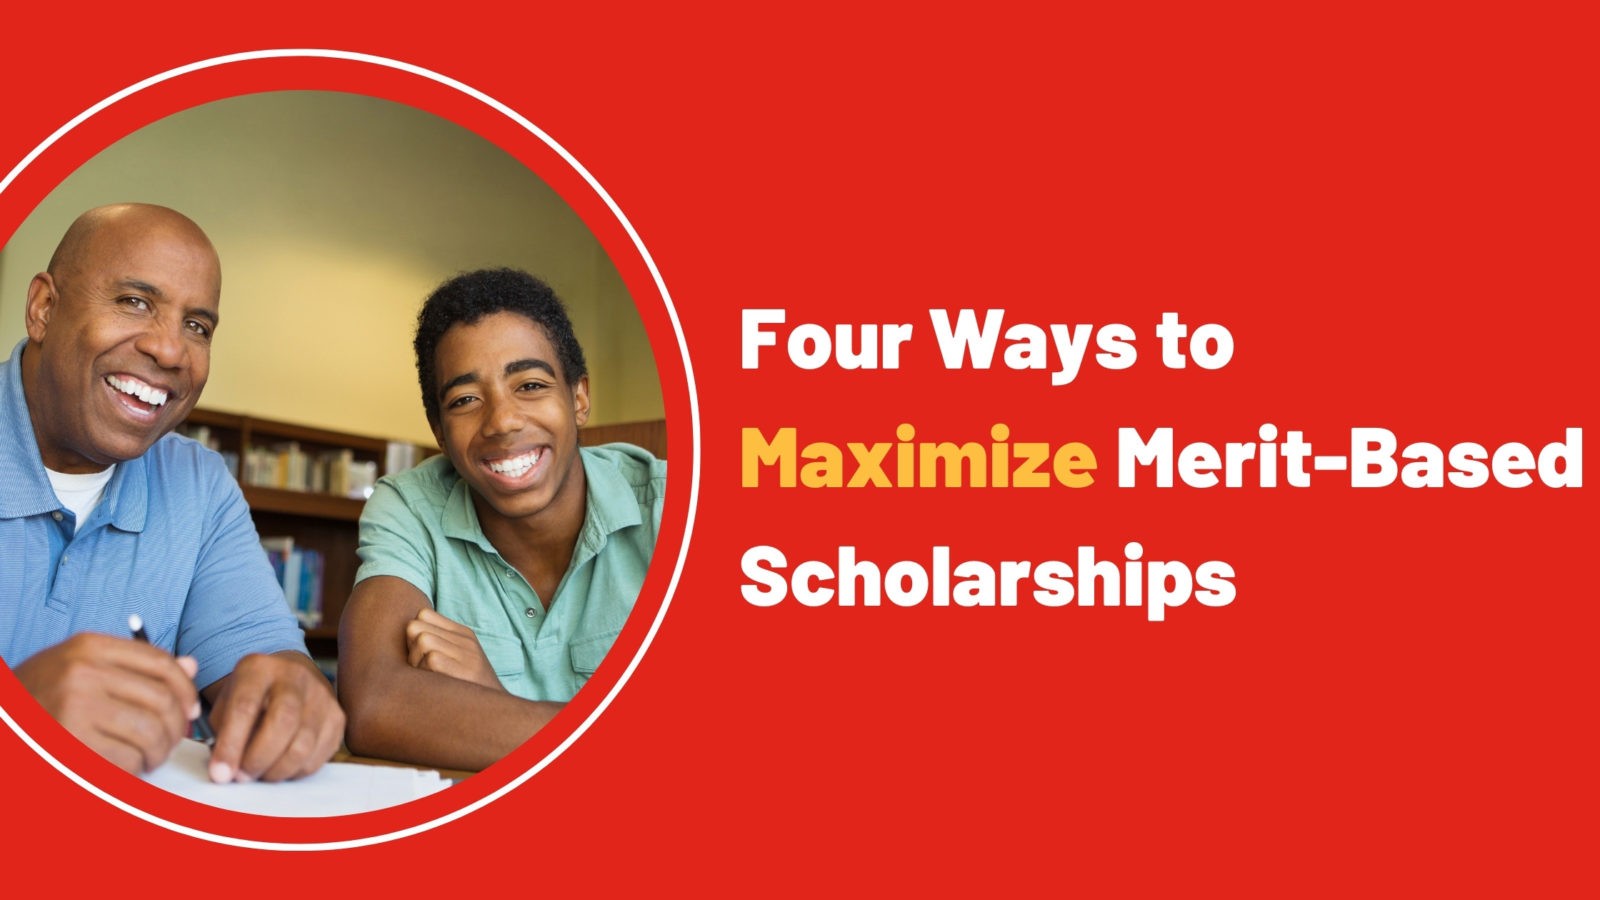 Merit Based Scholarships: Maximize Opportunity